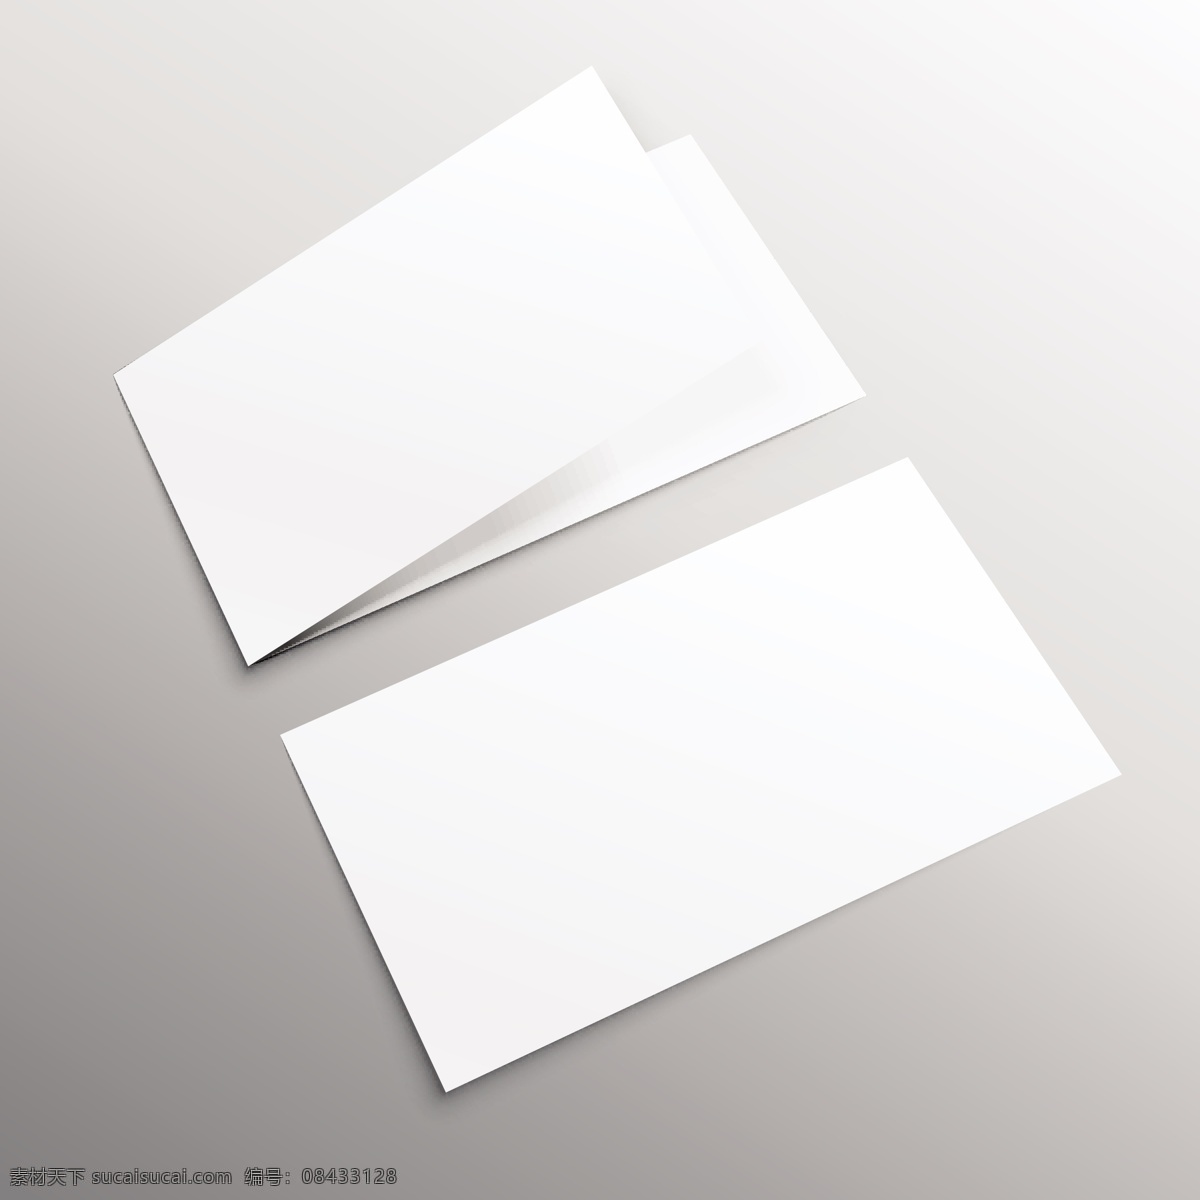 公司卡片 模型 小册子 样机 卡 书 模板 纸 杂志 空间 传单 网站 简报 优雅 白色的小册子 灰色的影子 显示 空白的 现实的